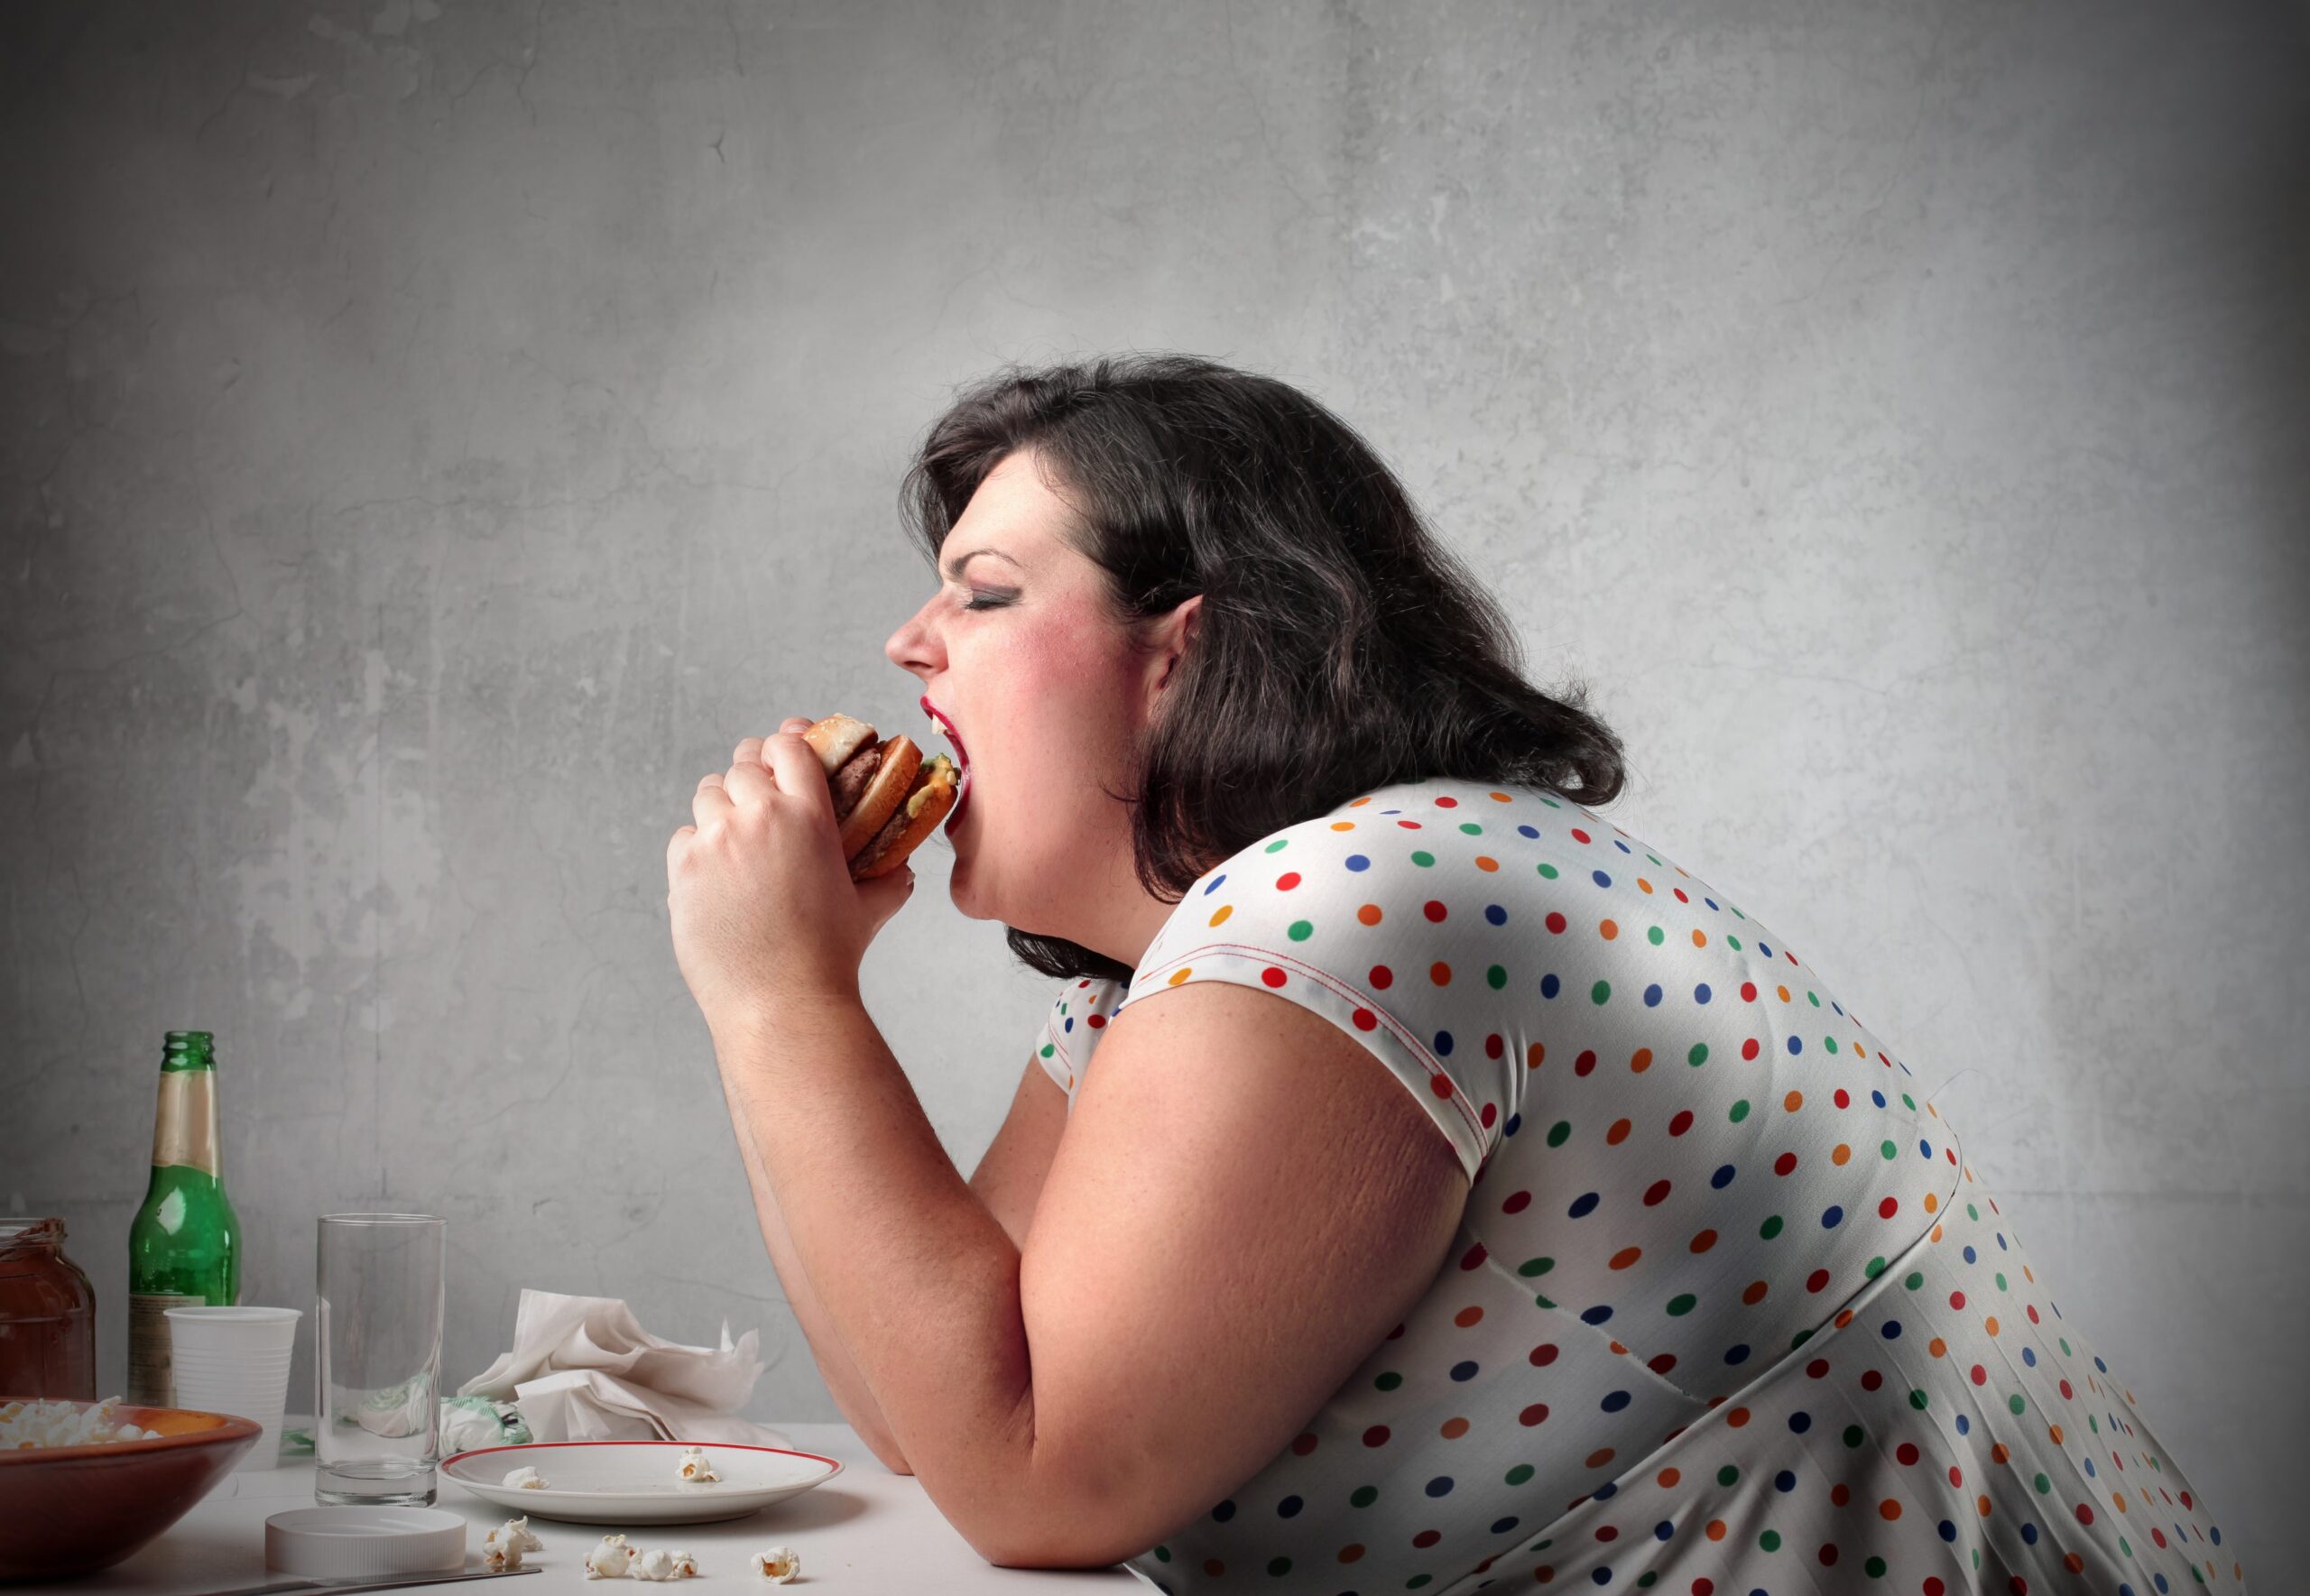 L’obesità è una malattia che se ne trascina dietro delle altre. Va curata fin dai primi chili in più